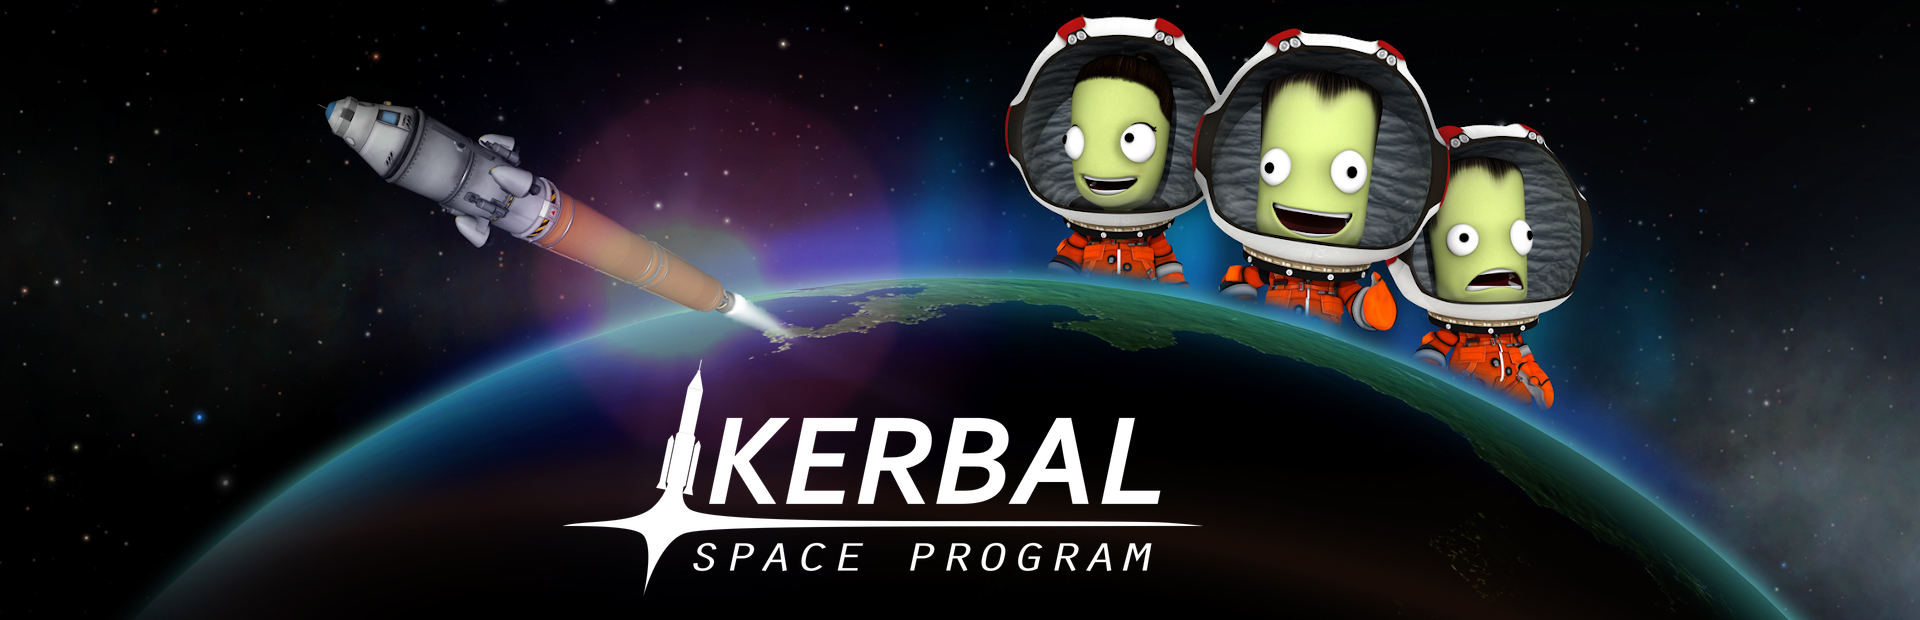 دانلود بازی Kerbal Space Program برای پی سی | گیمباتو